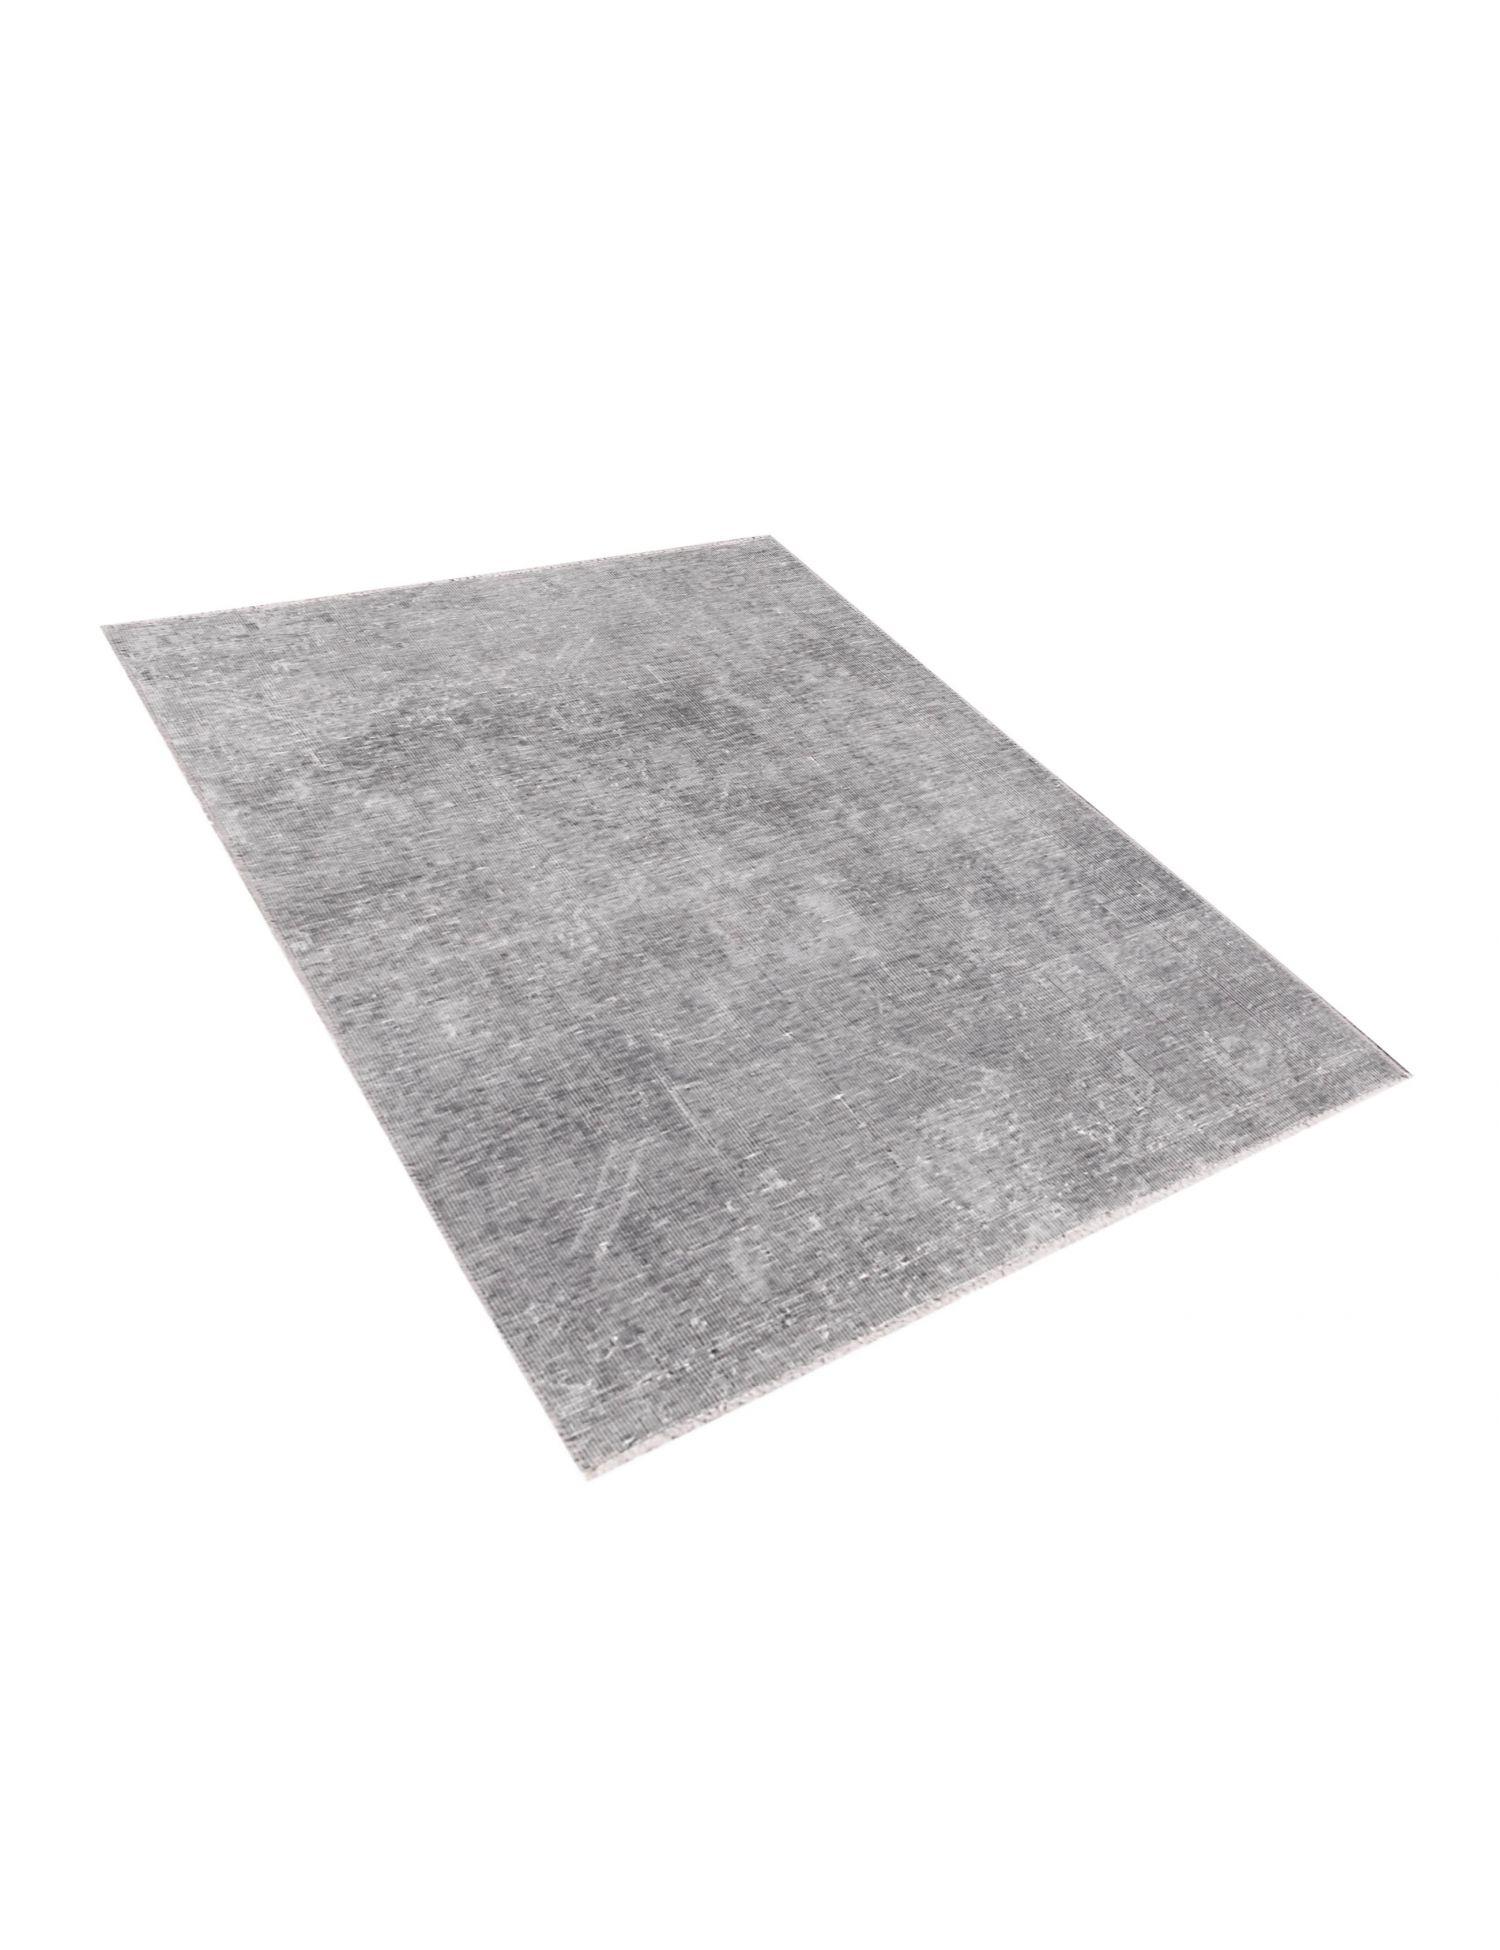 Persischer vintage teppich  grau <br/>155 x 105 cm